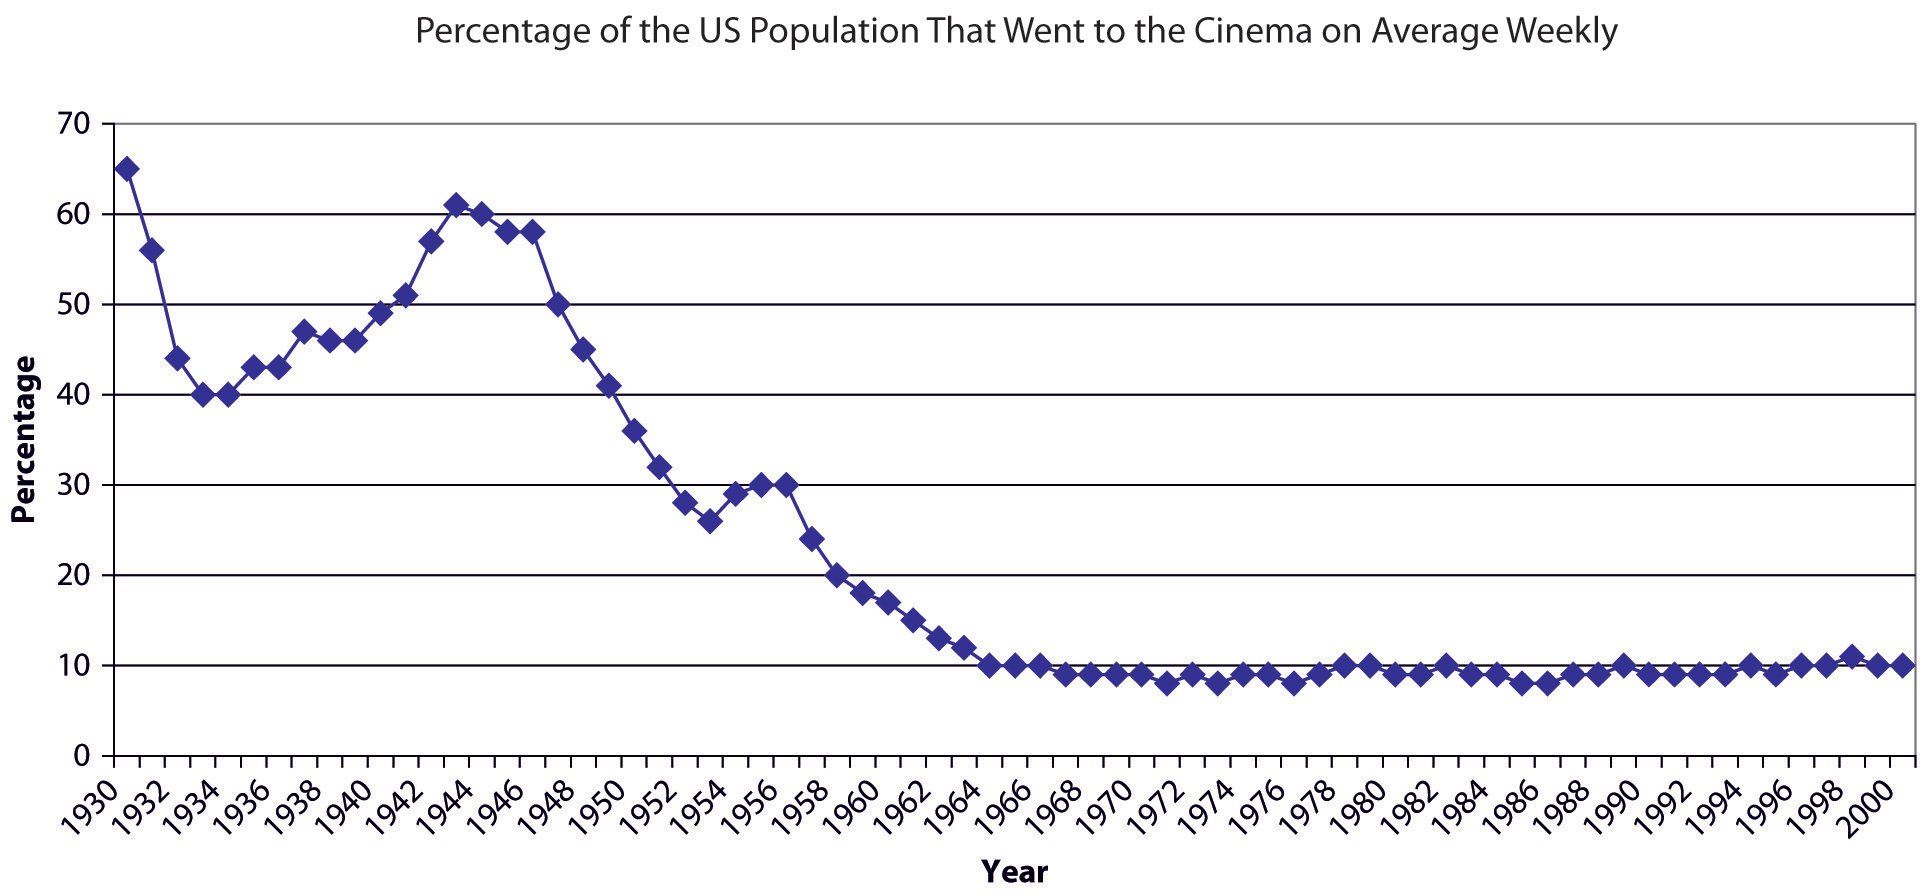 Durchscnittliche wöchentliche Kinobesucherzahlen in den USA von 1930 bis 2000